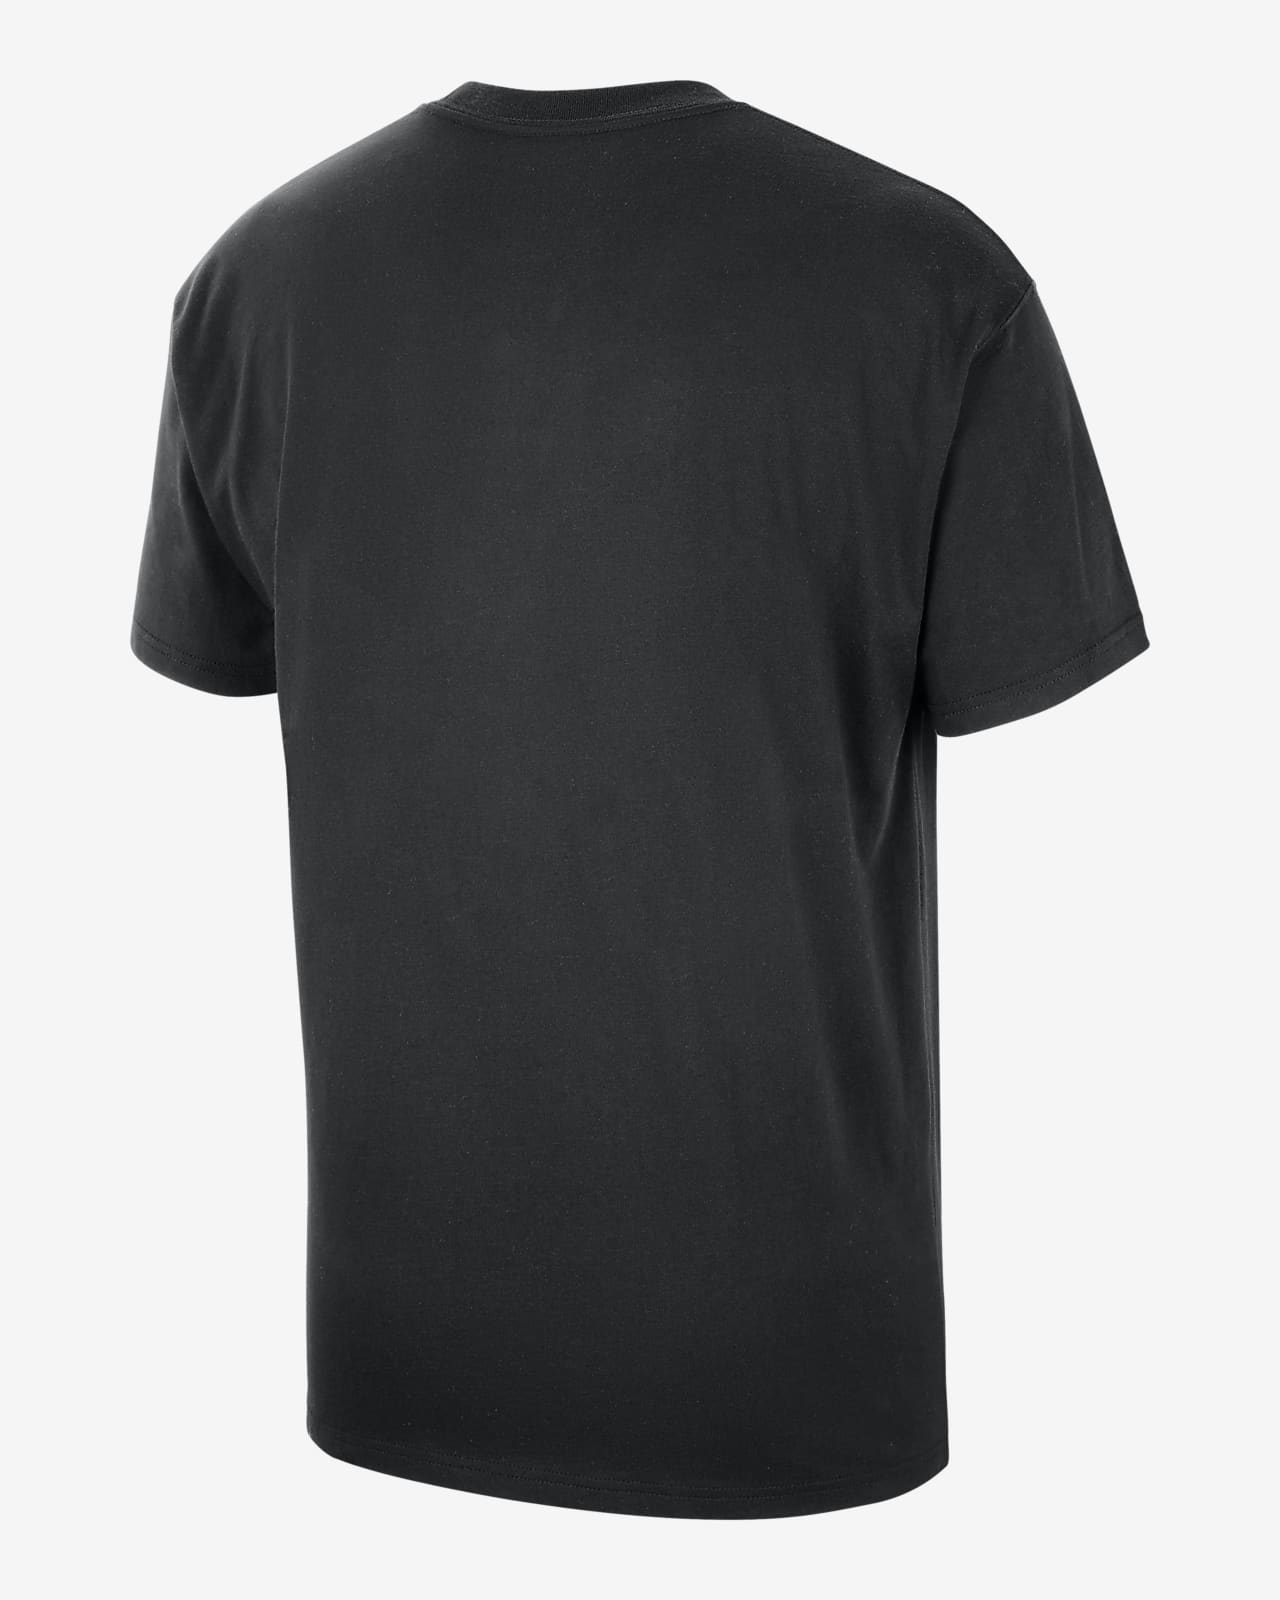 Nike Brooklyn Nets Dri-FIT NBA Logo T-Shirt Black - BLACK